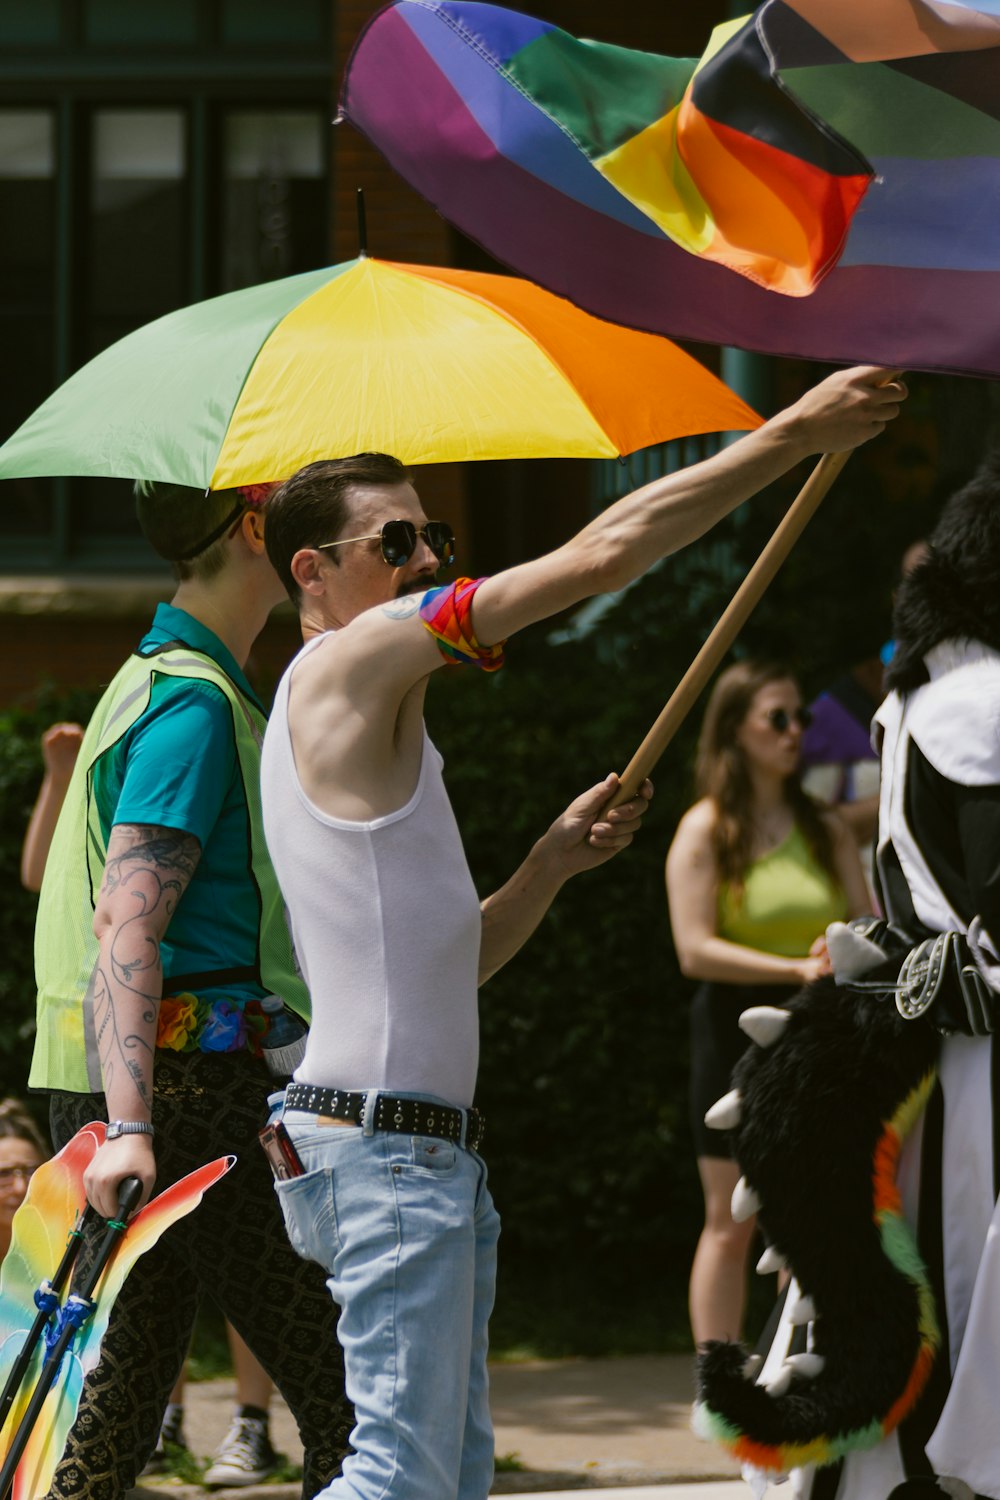 a man holding a rainbow umbrella in a parade